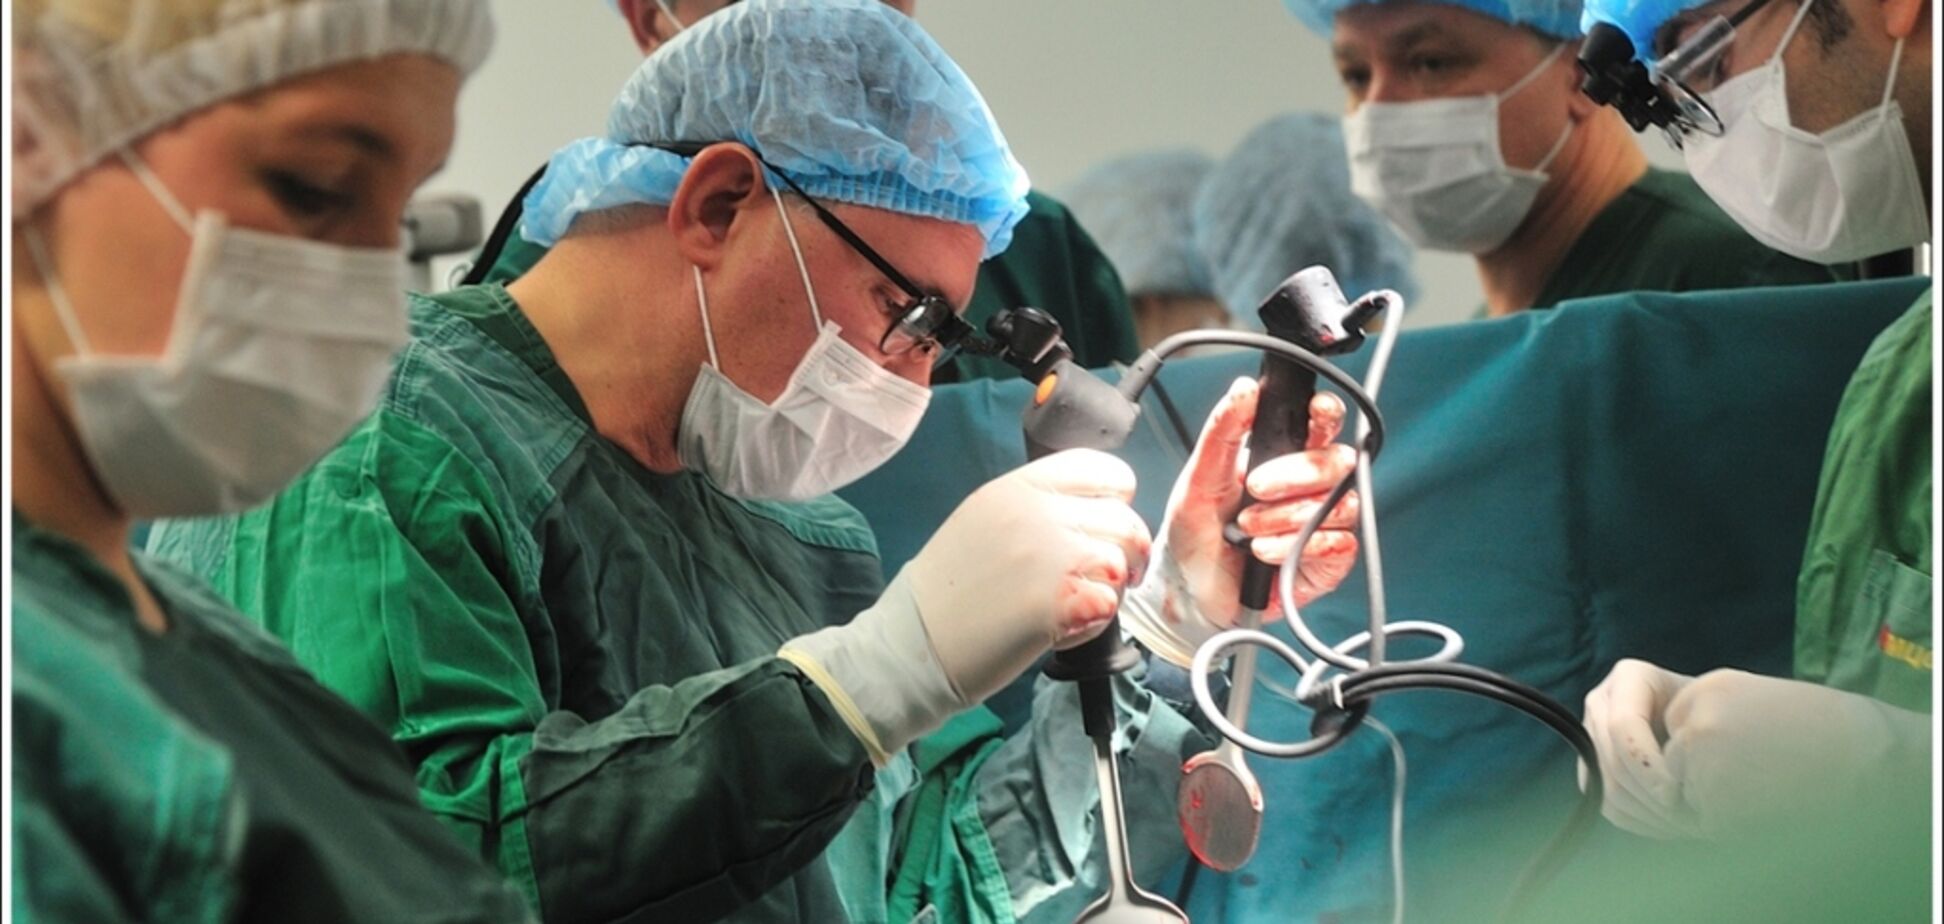 Методика уникальна: украинские врачи совершили революцию в кардиохирургии